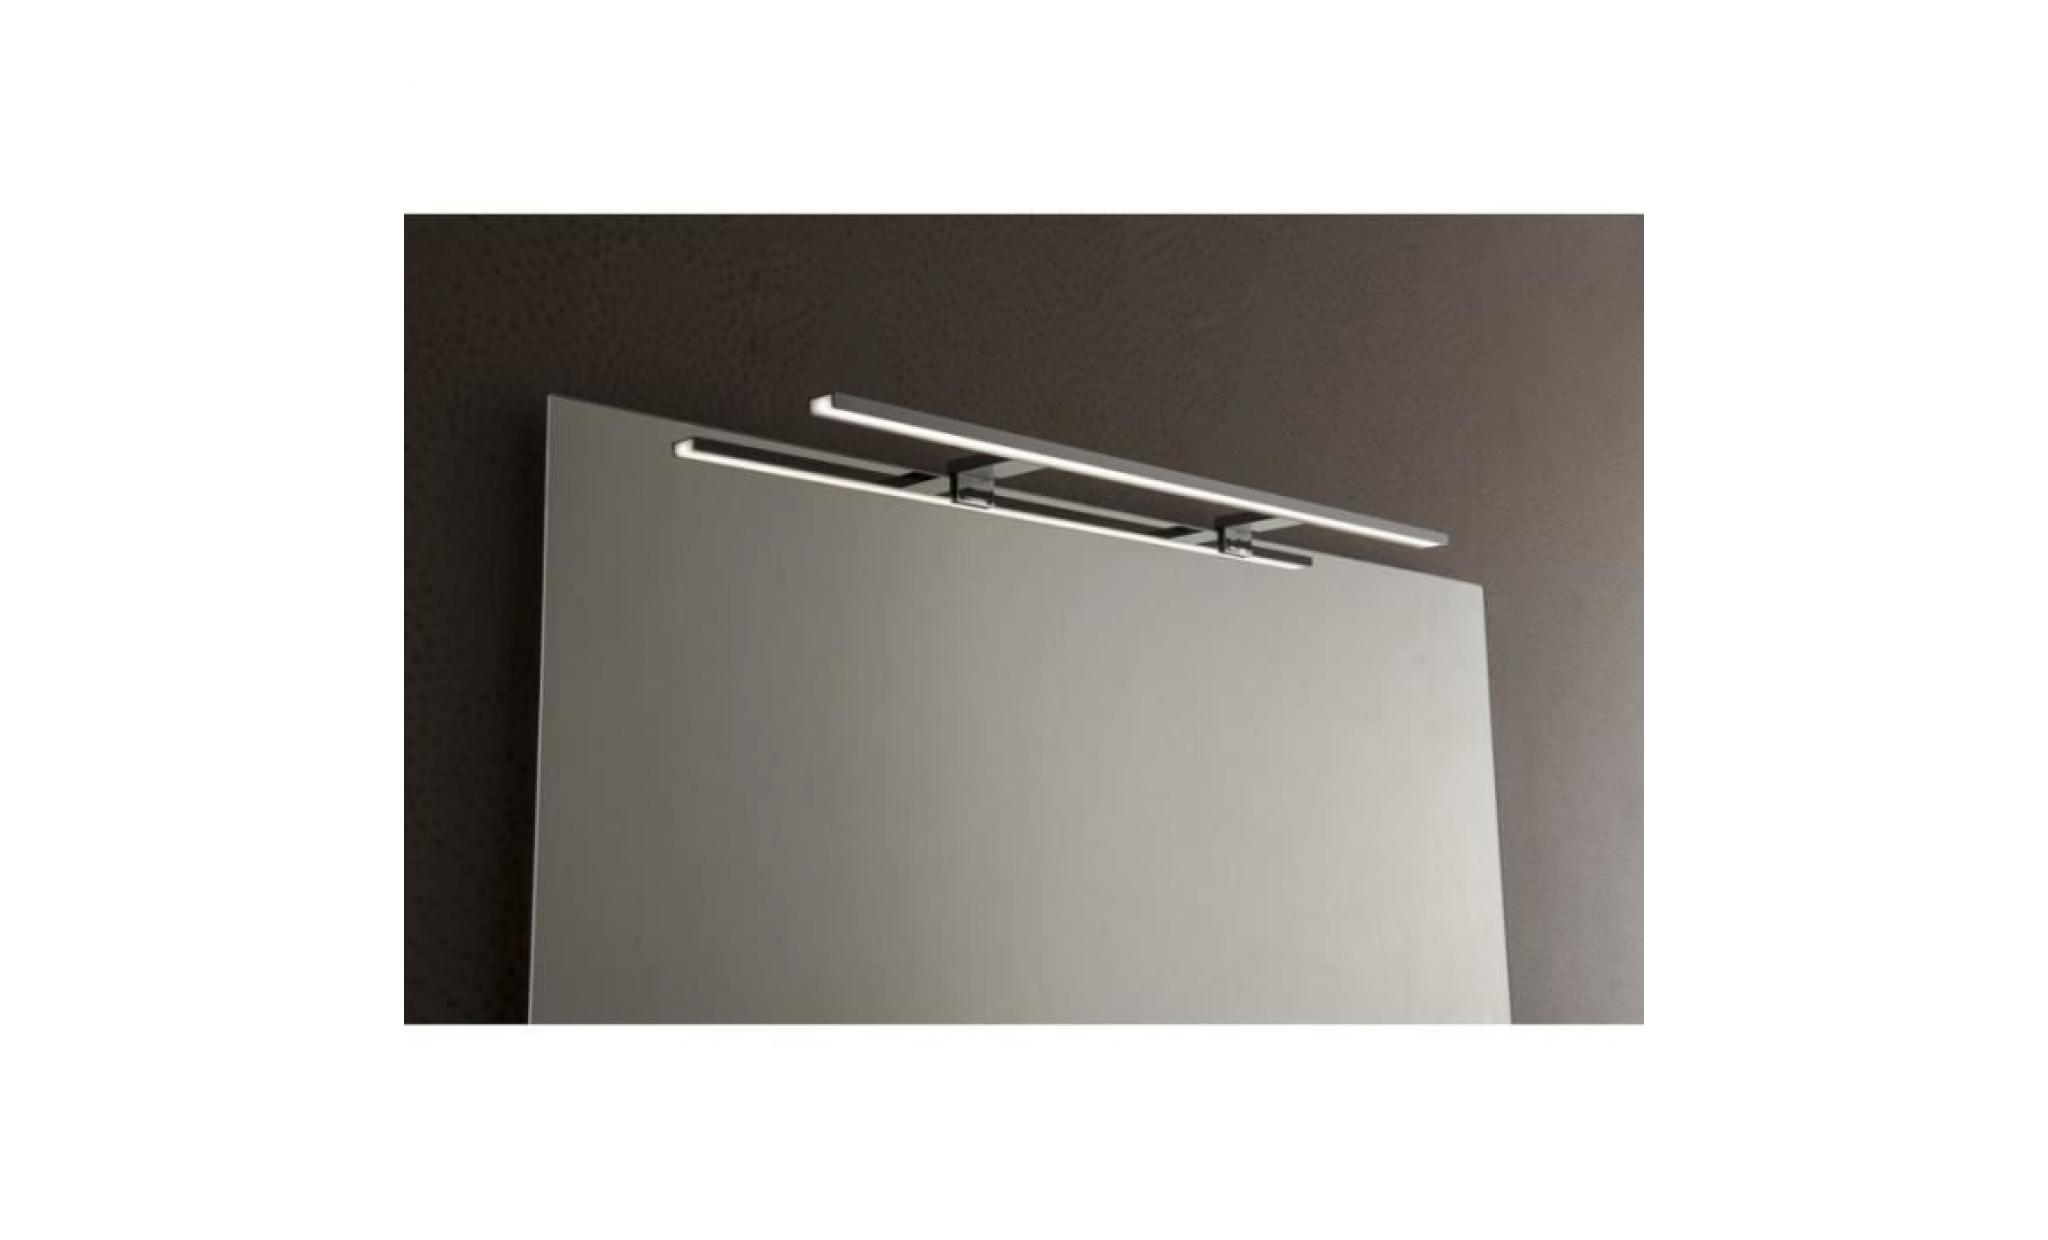 spot de salle de bains avec éclairage led   chrome   3,2 cm x 4,5 cm (hxl) pas cher